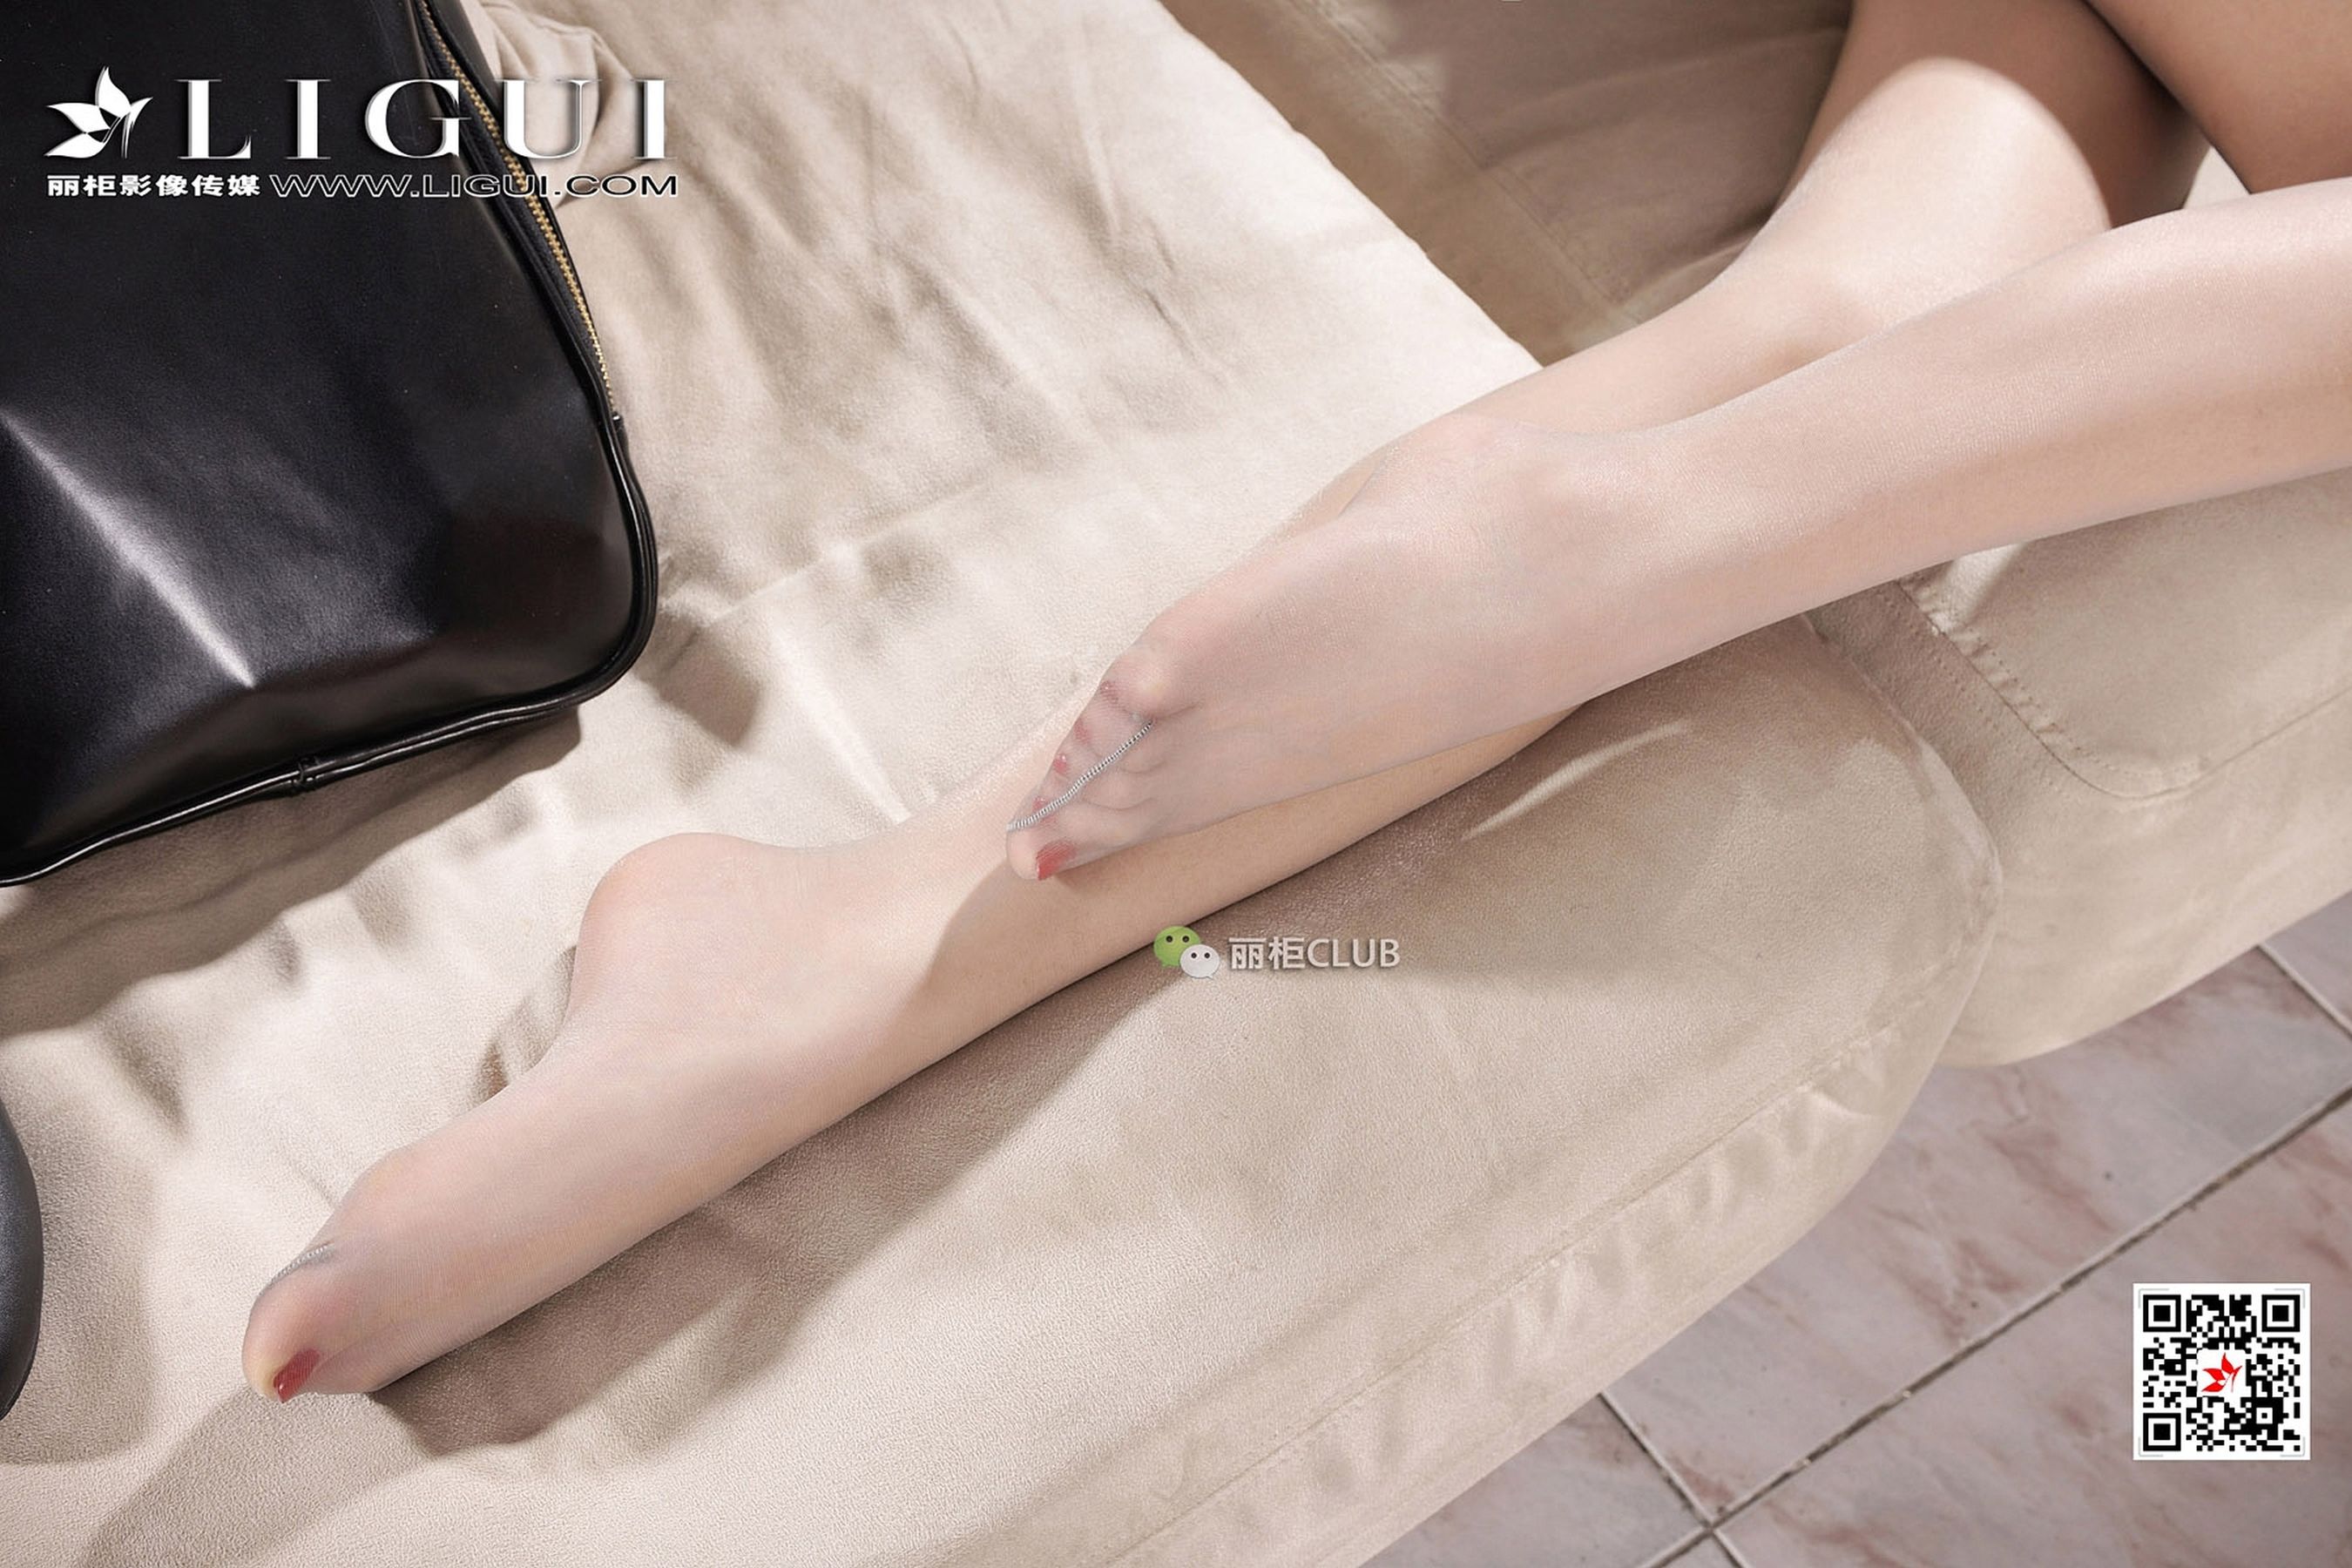 Leg Model Kexin OL Meat Stockings Li Cabinel LIGUI